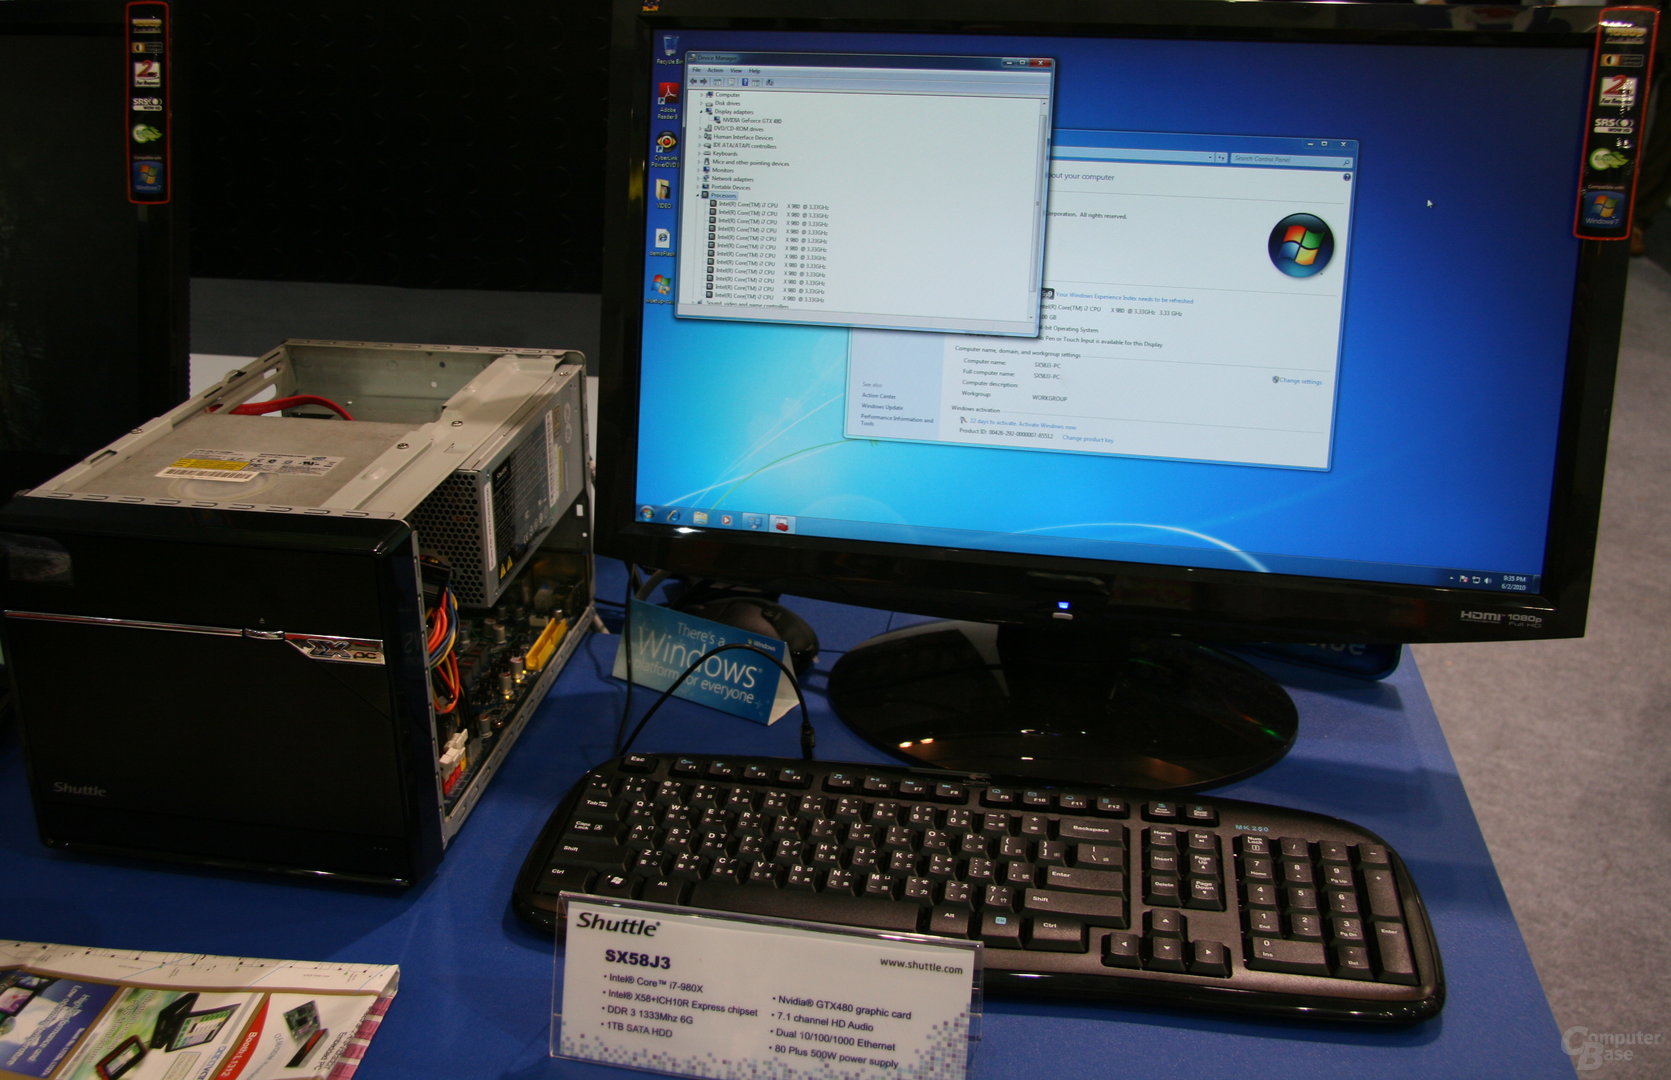 Shuttle-Barebone mit Hexa-Core-CPU und GTX 480